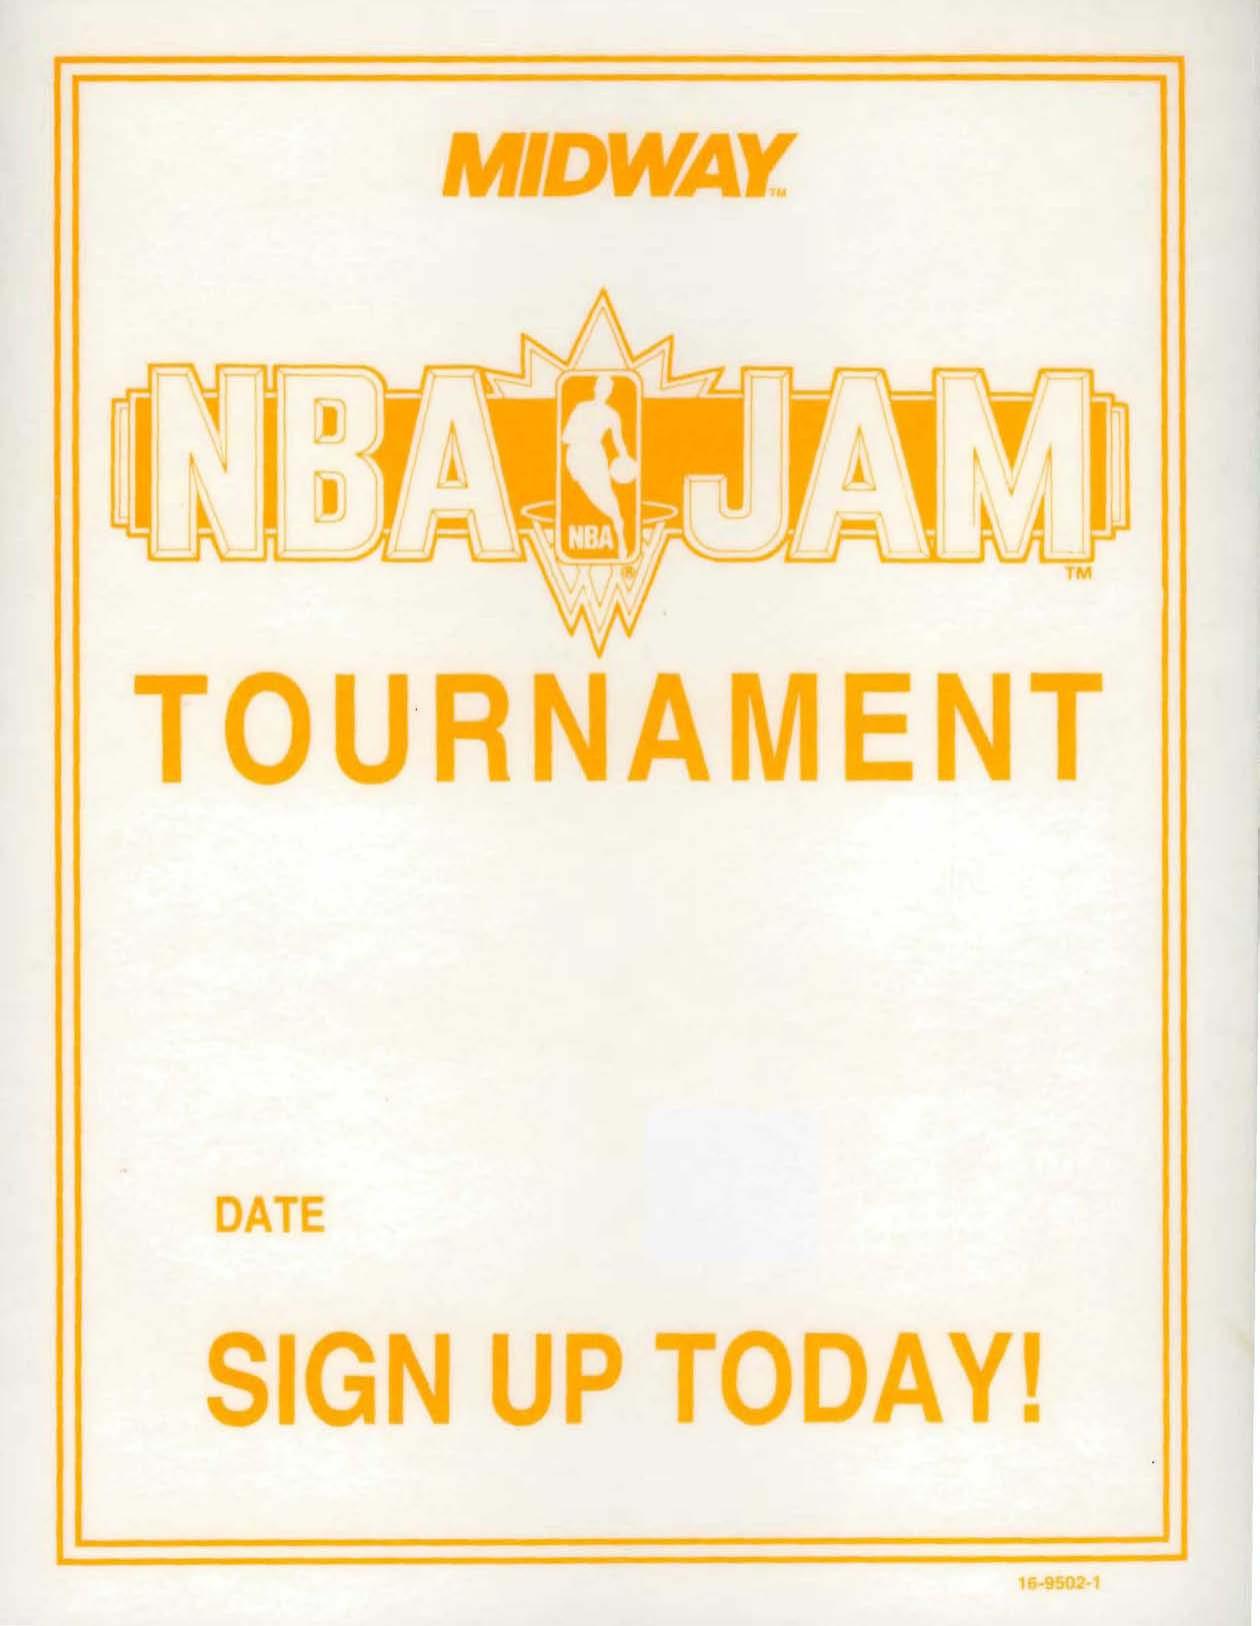 NBA Jam Tournament Signup Sheet (16-9502-1)